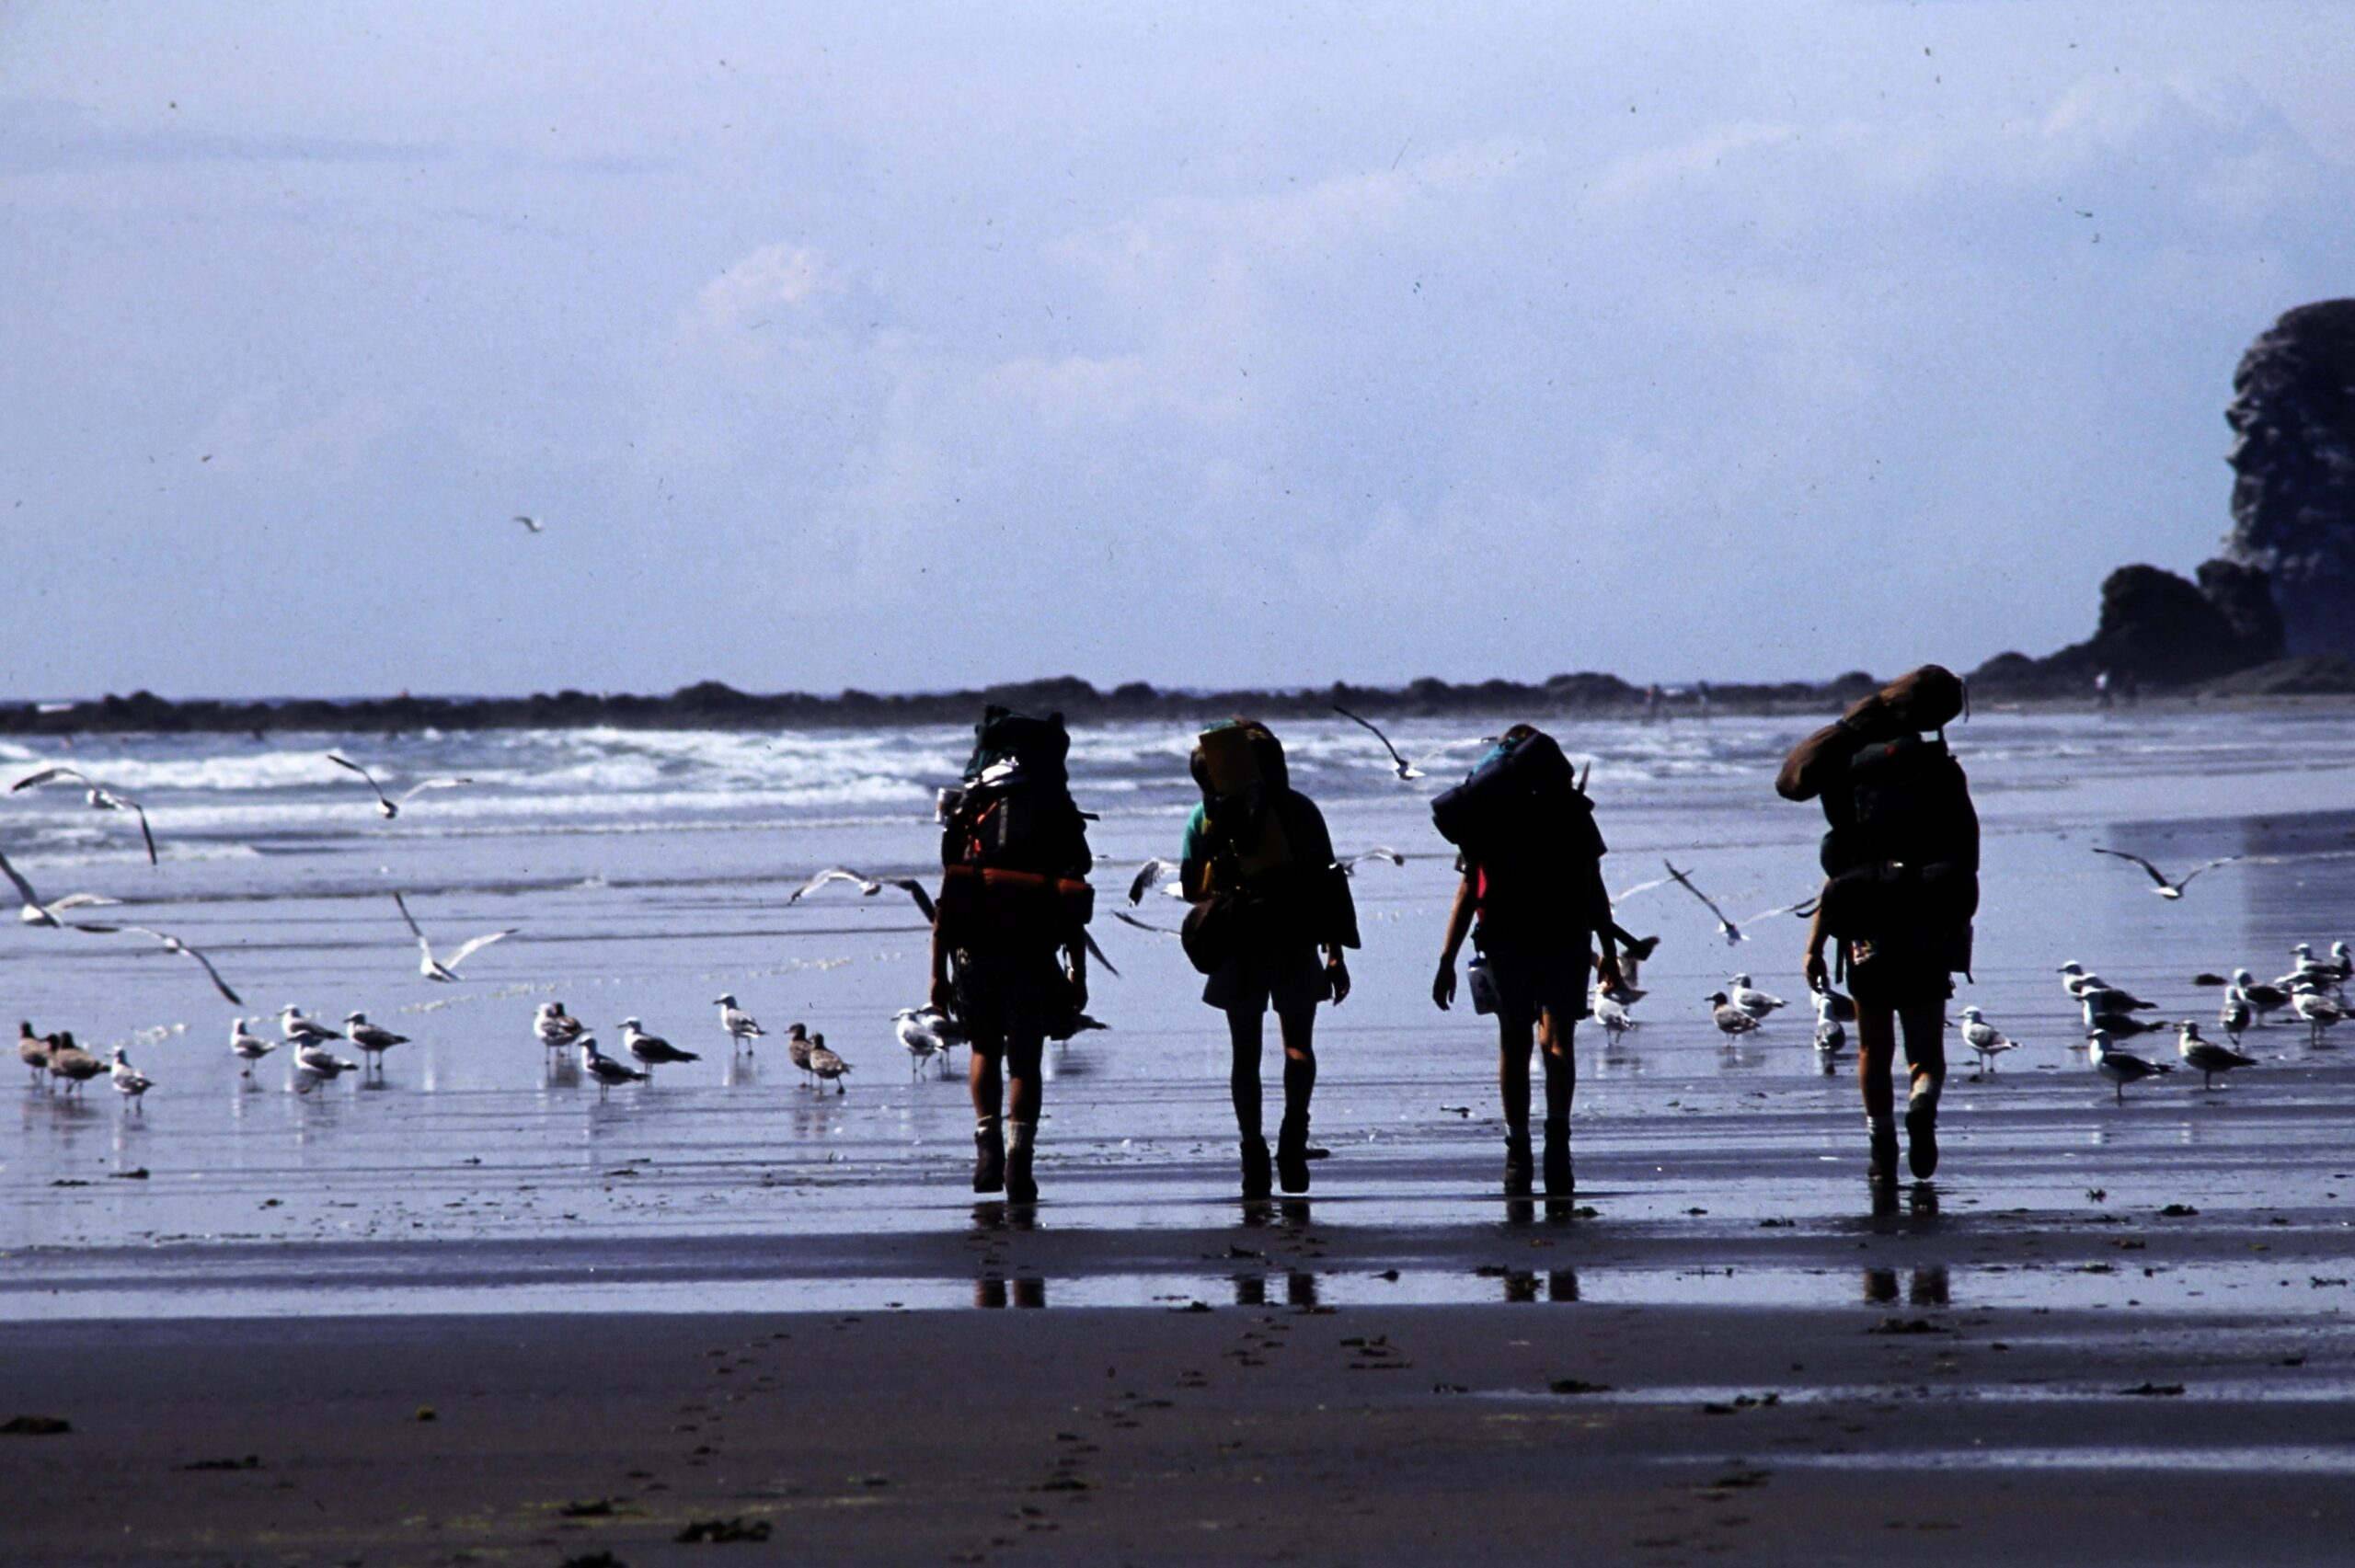 1994 4 beach backpackers